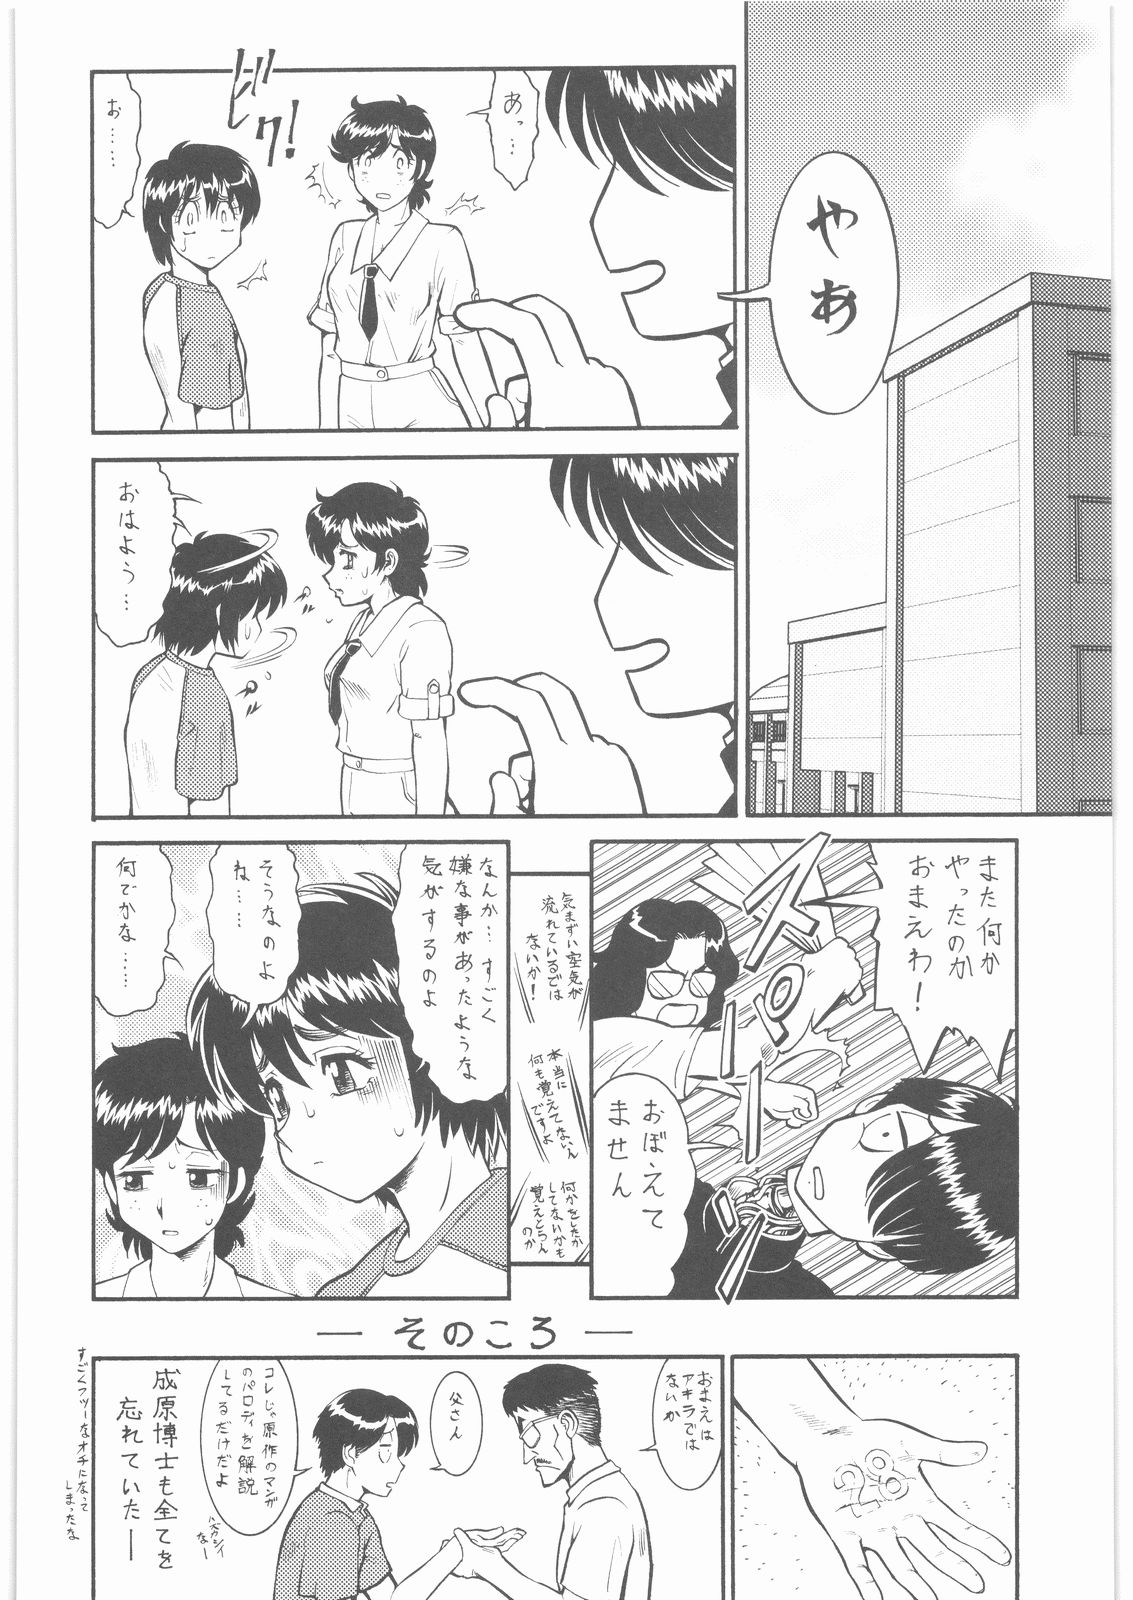 (SC35) [Tsurikichi Doumei (Umedama Nabu)] Umedamangashuu 12 Shito (Various) page 49 full